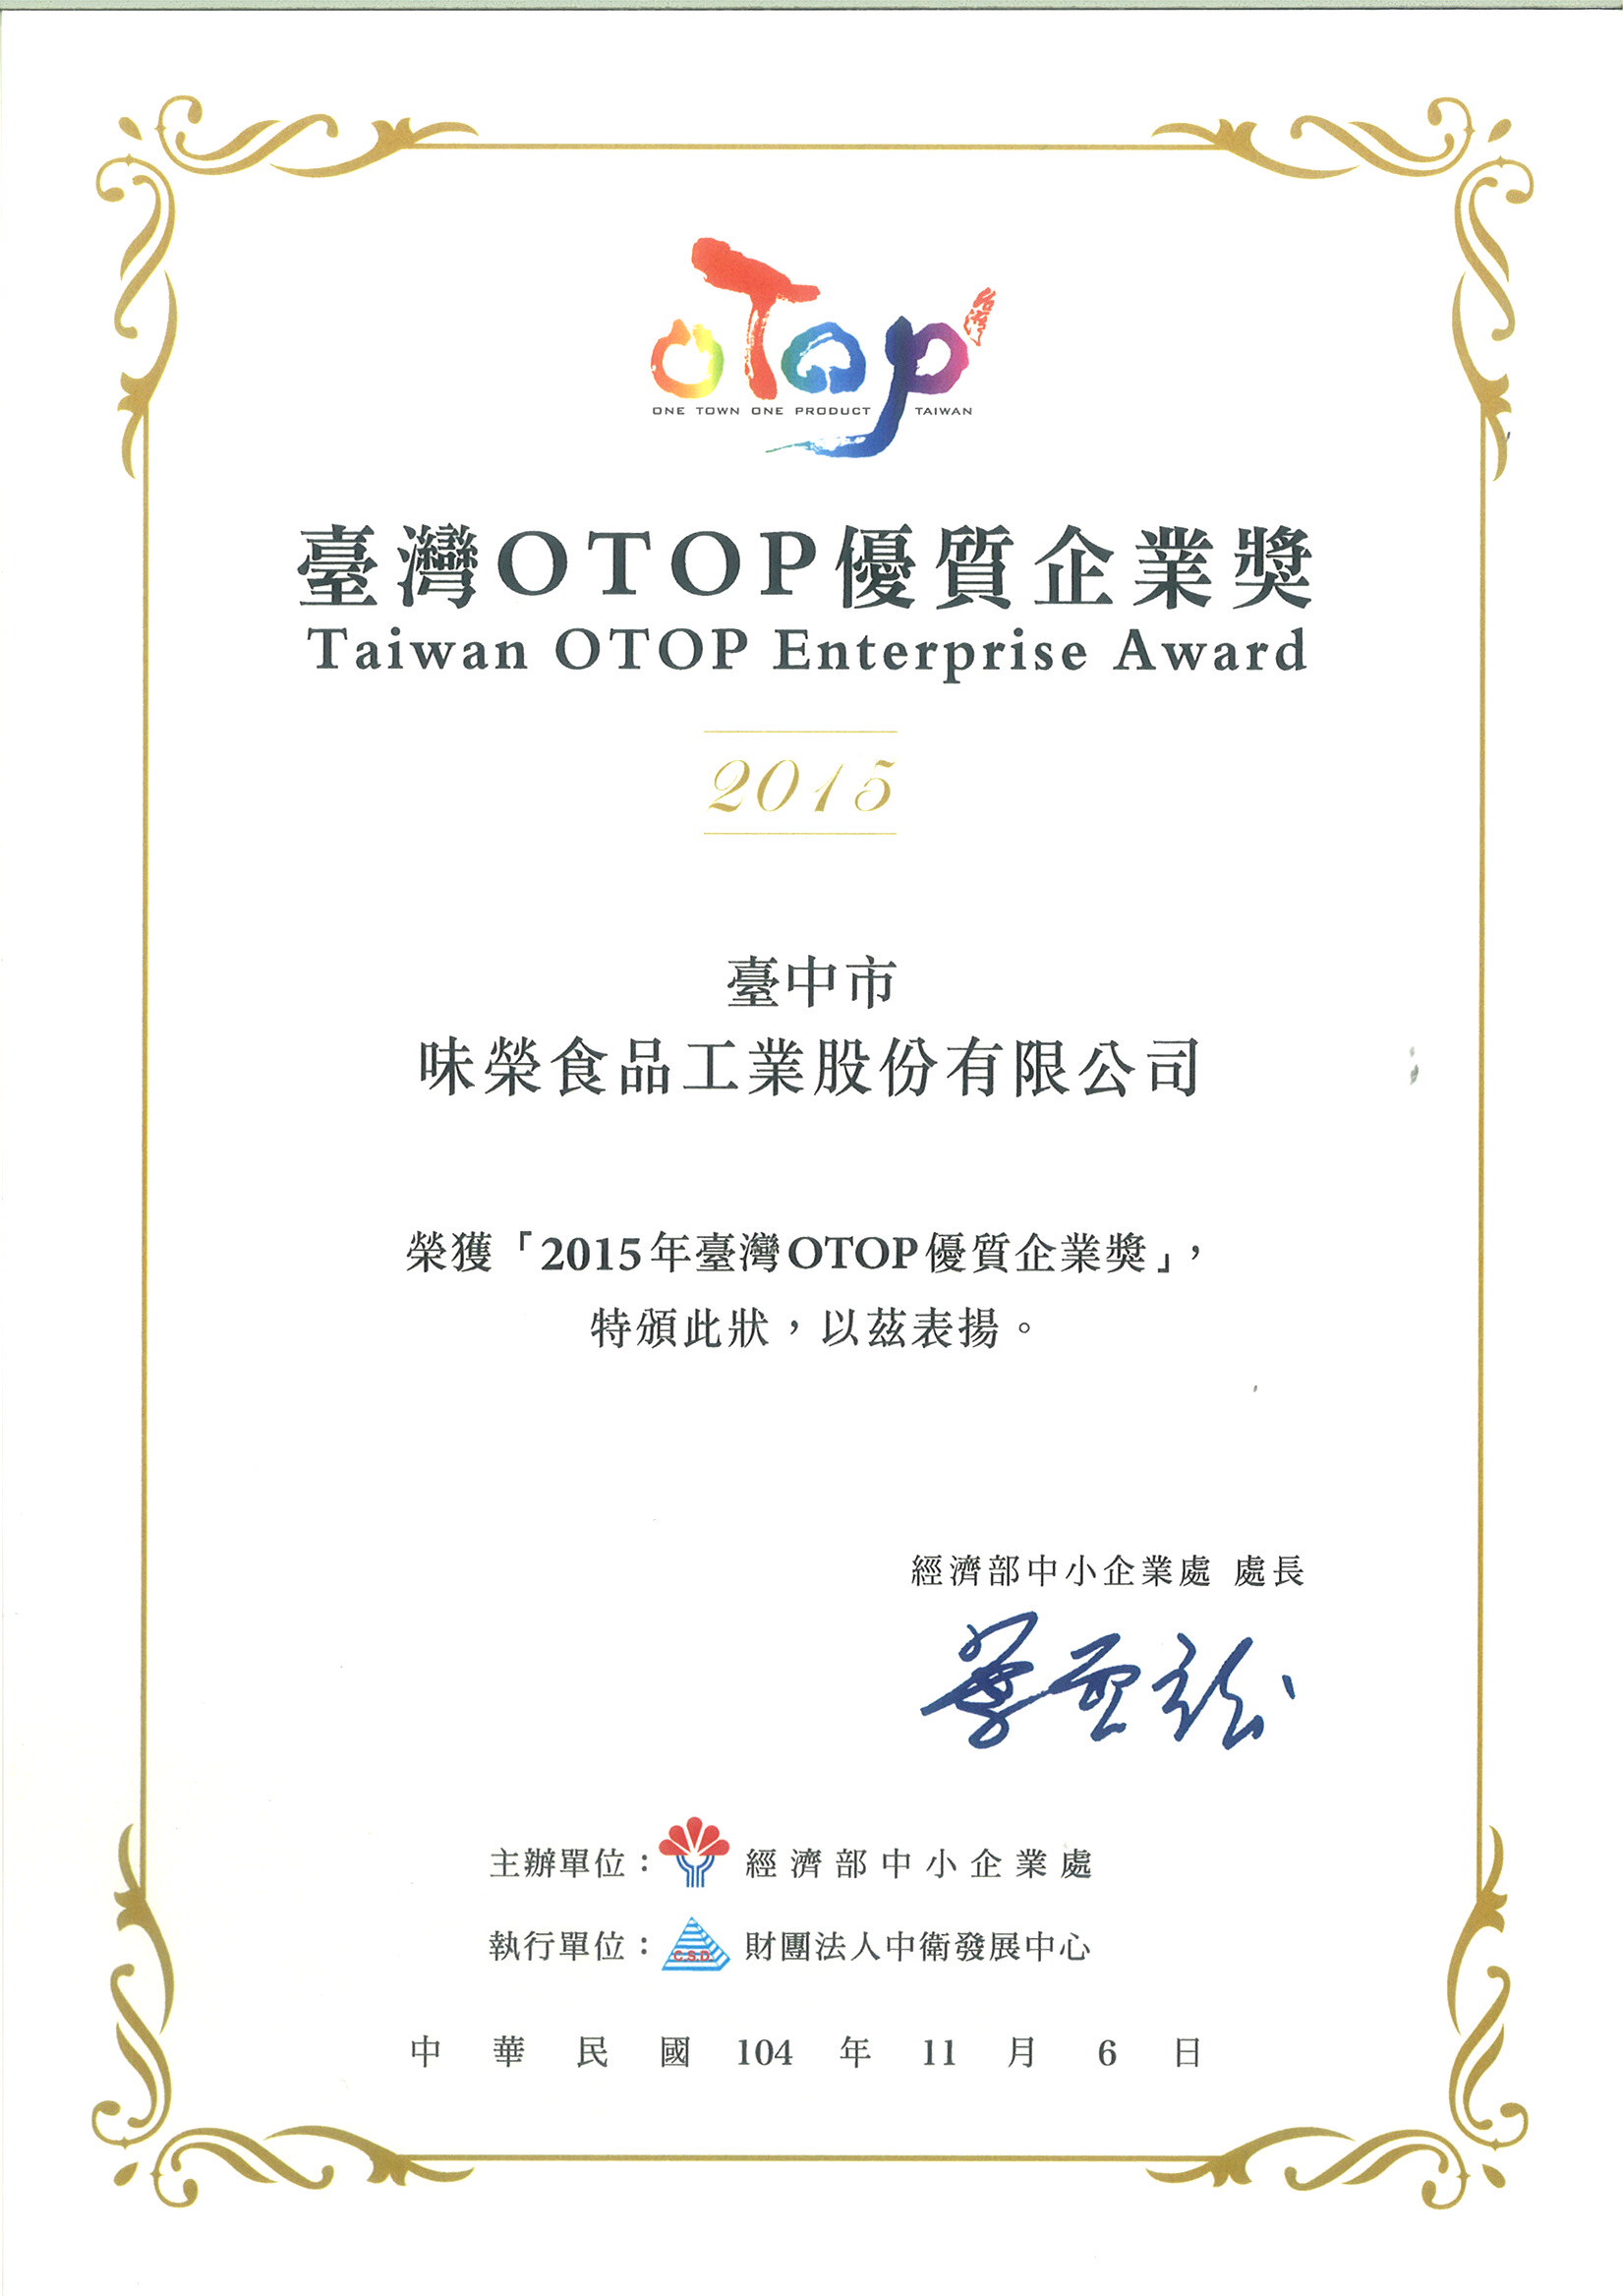 経済部中小企業局より「2015台湾OTOP優良企業賞」を受賞